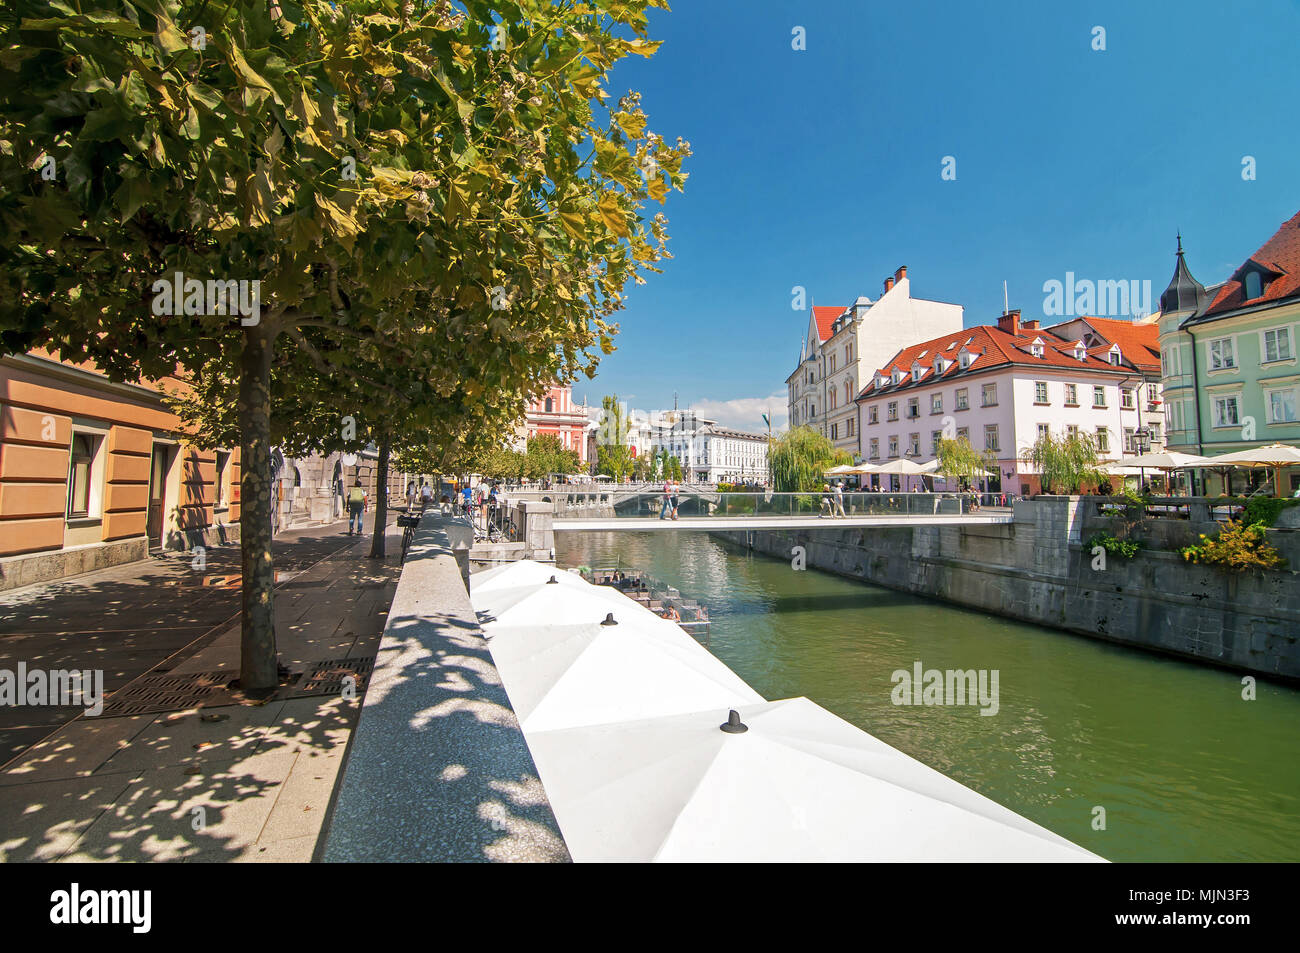 Ljubljanica river and old city center during summer, Ljubljana, Slovenia Stock Photo